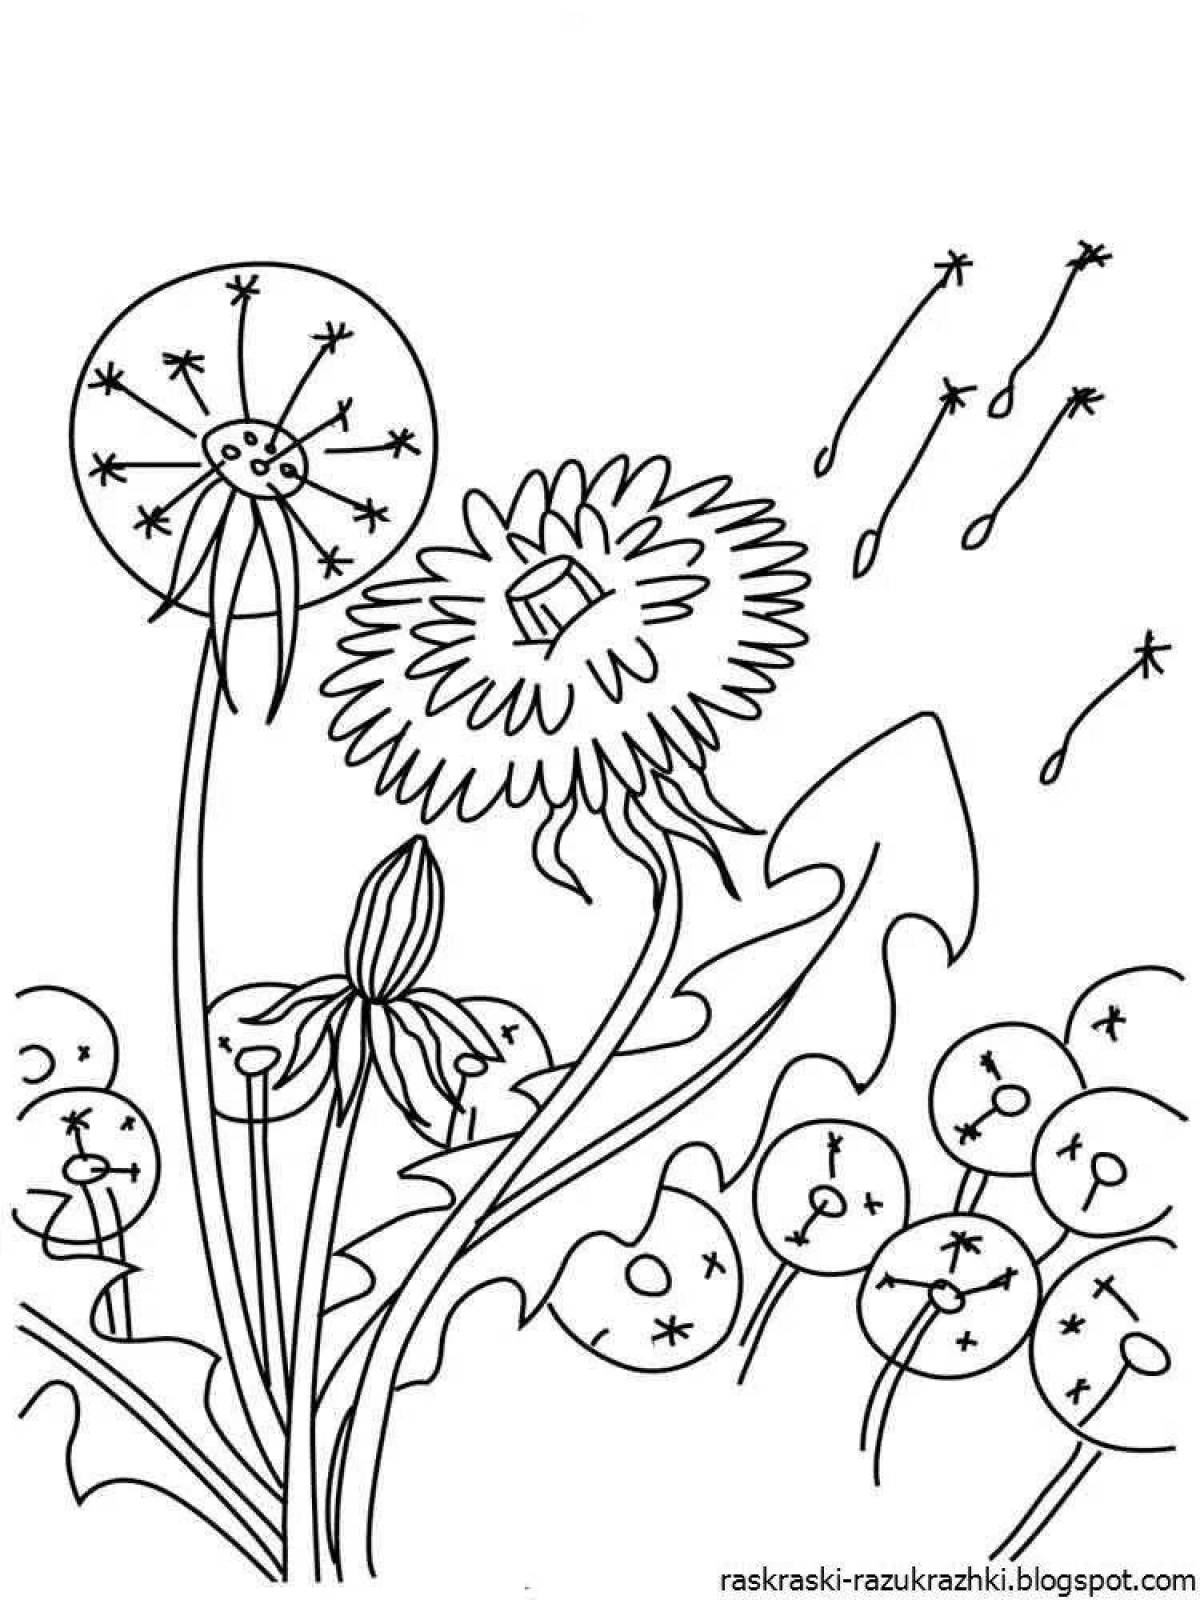 Sparkling dandelion coloring book for kids